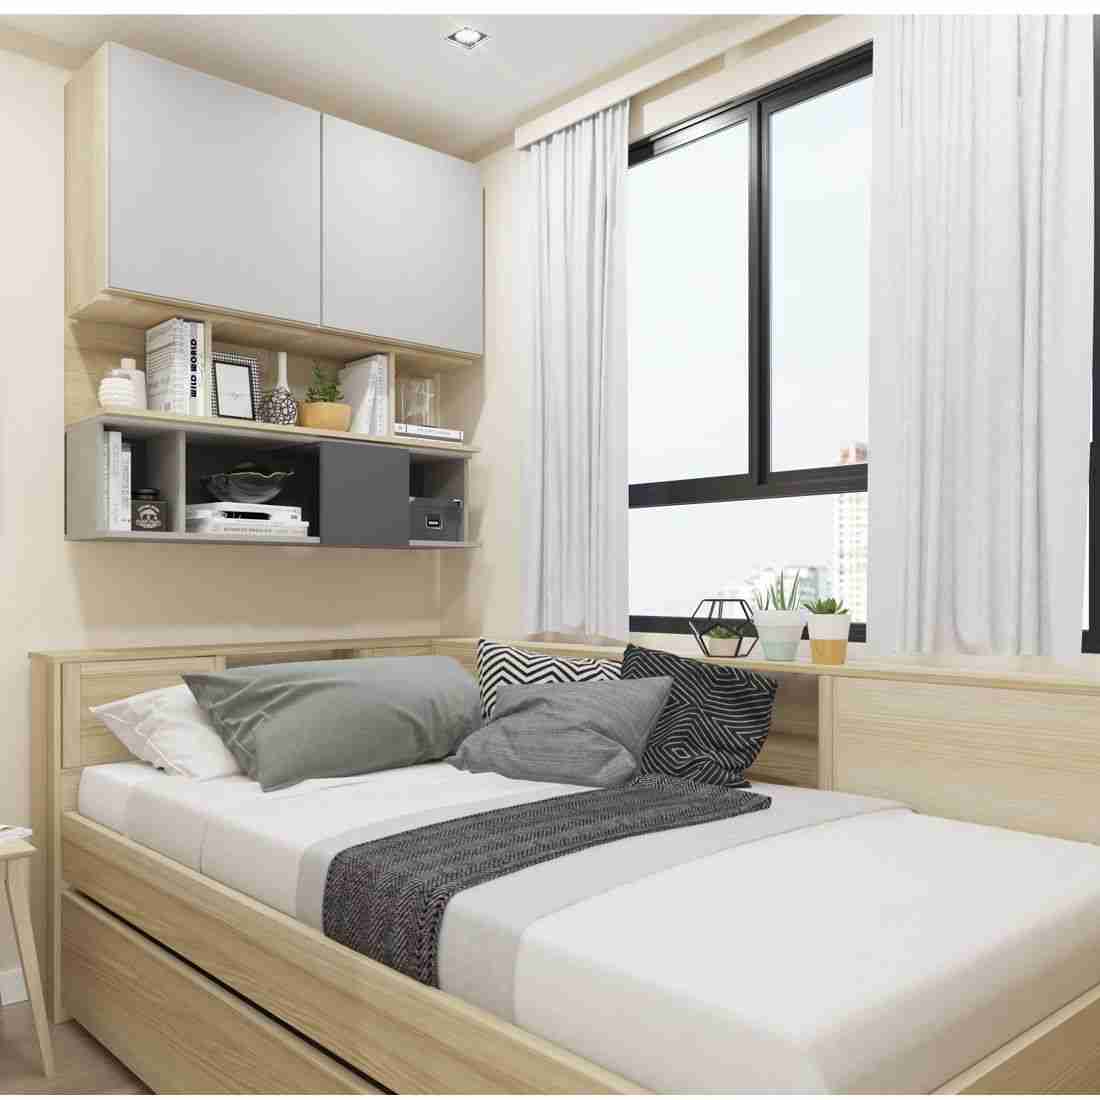 ชุดห้องนอน ชุดห้องนอน รุ่น Log สีสีโอ๊ค-SB Design Square